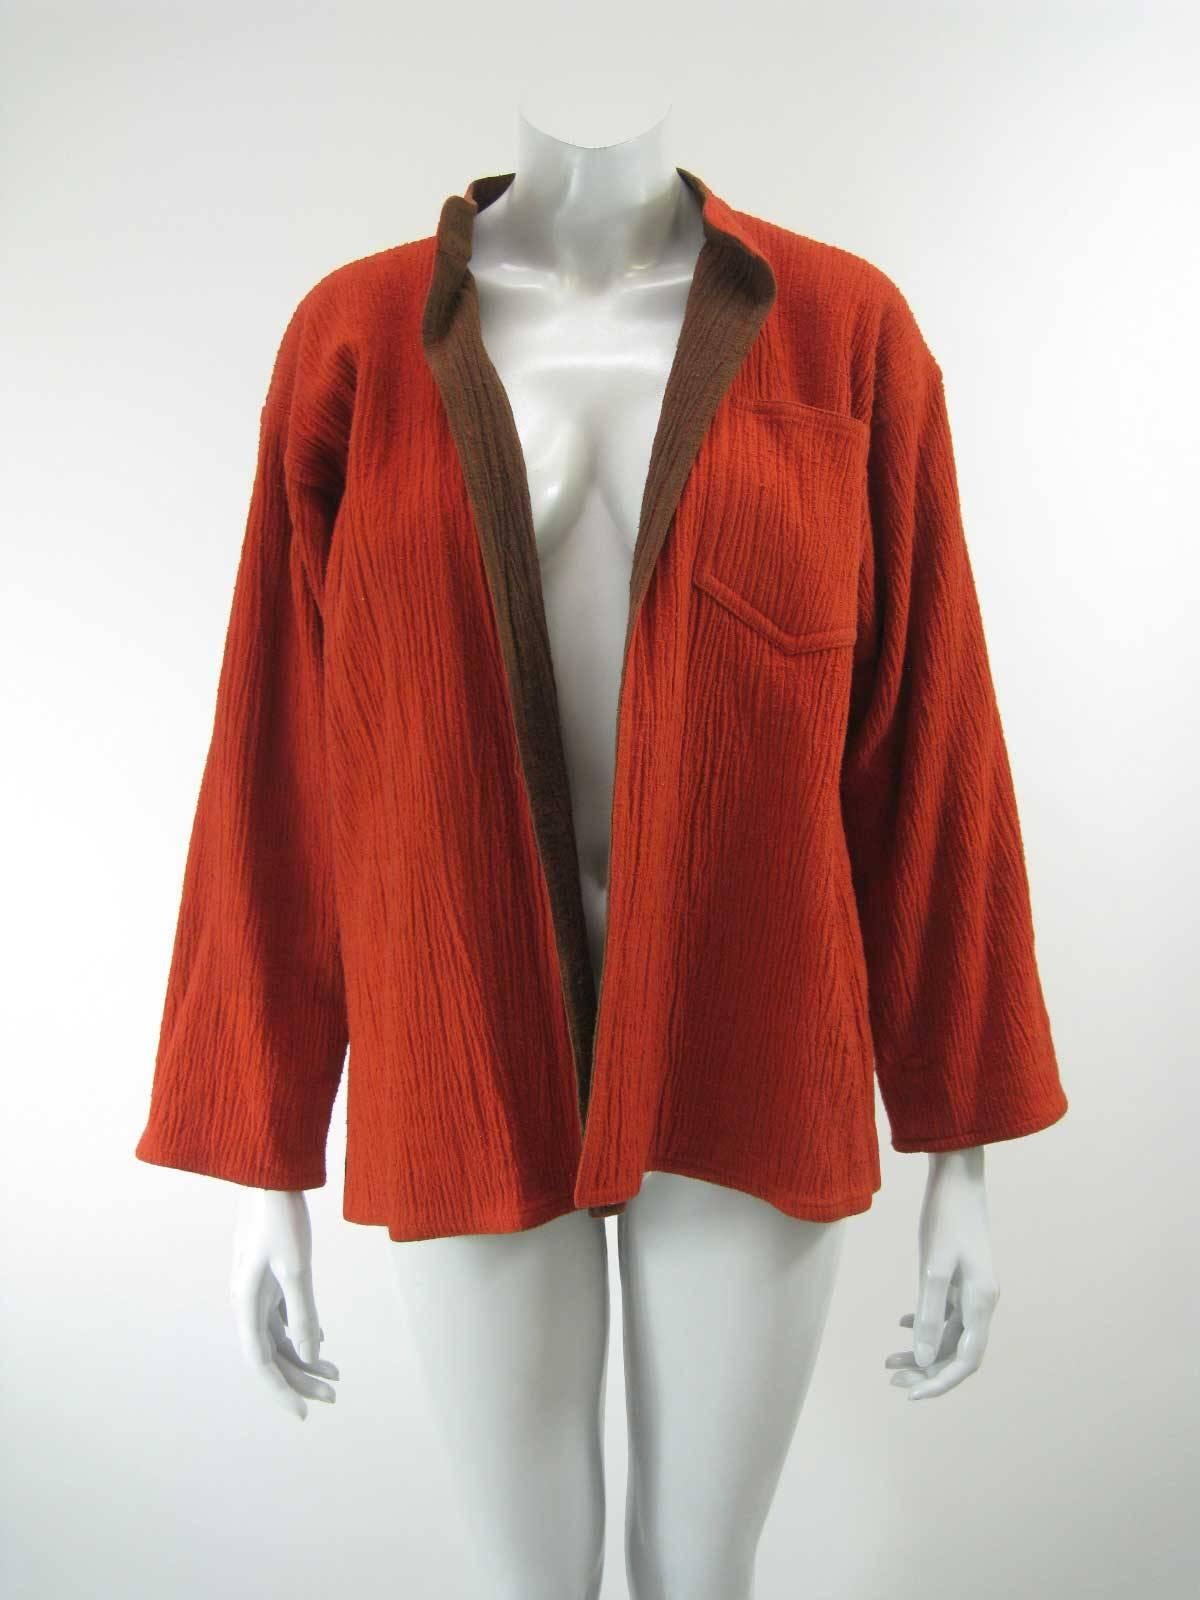 Sehr frühe Vintage-Jacke von Issey Miyake.

Kontrastierende Farben von Orange und Braun.

Kann mit oder ohne Manschetten getragen werden.

Große Brusttasche.

Lockere, offene Form im japanischen Stil ohne Verschlüsse.

Aufrechter